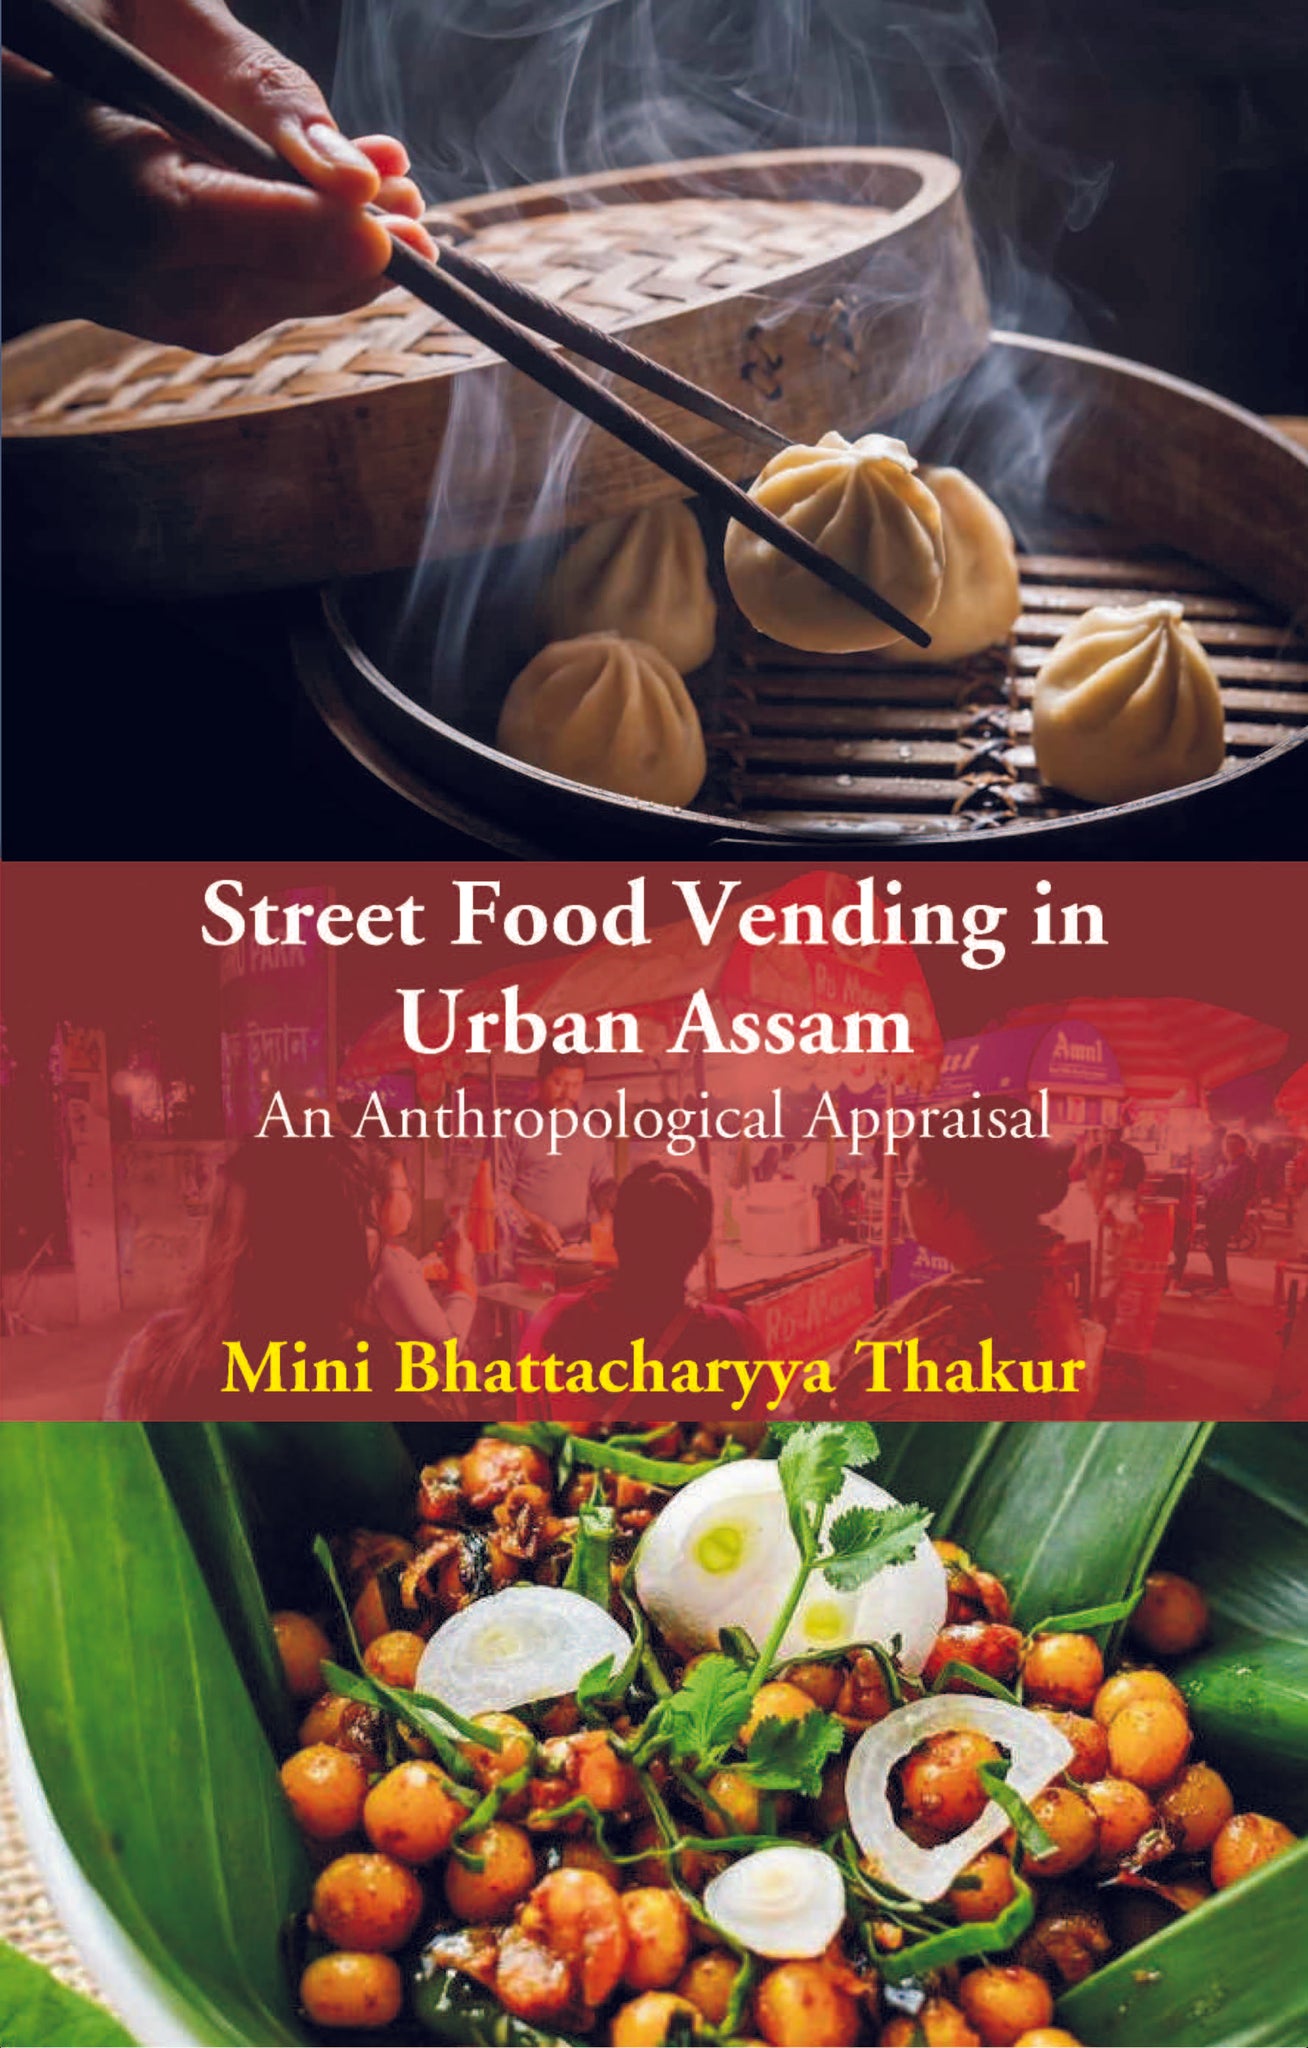 Street Food Vending in Urban Assam: An Anthropological Appraisal